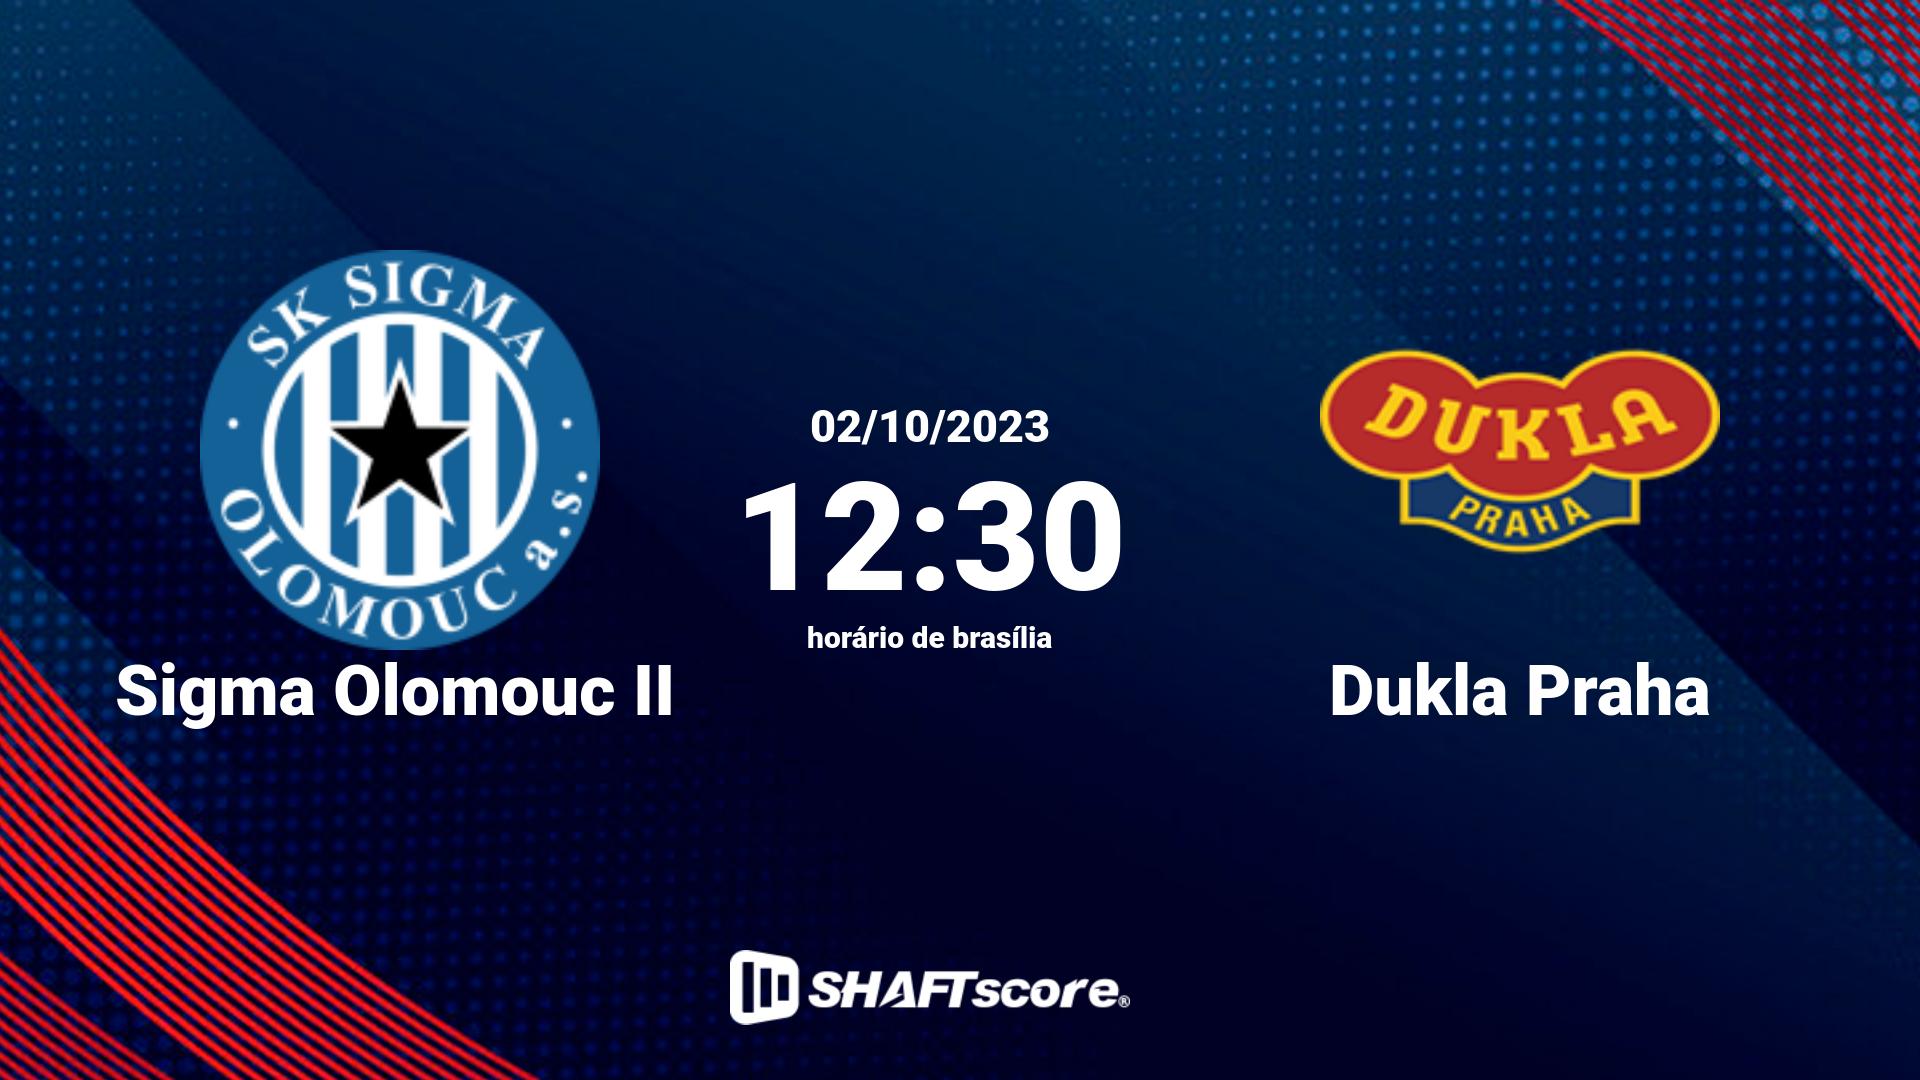 Estatísticas do jogo Sigma Olomouc II vs Dukla Praha 02.10 12:30